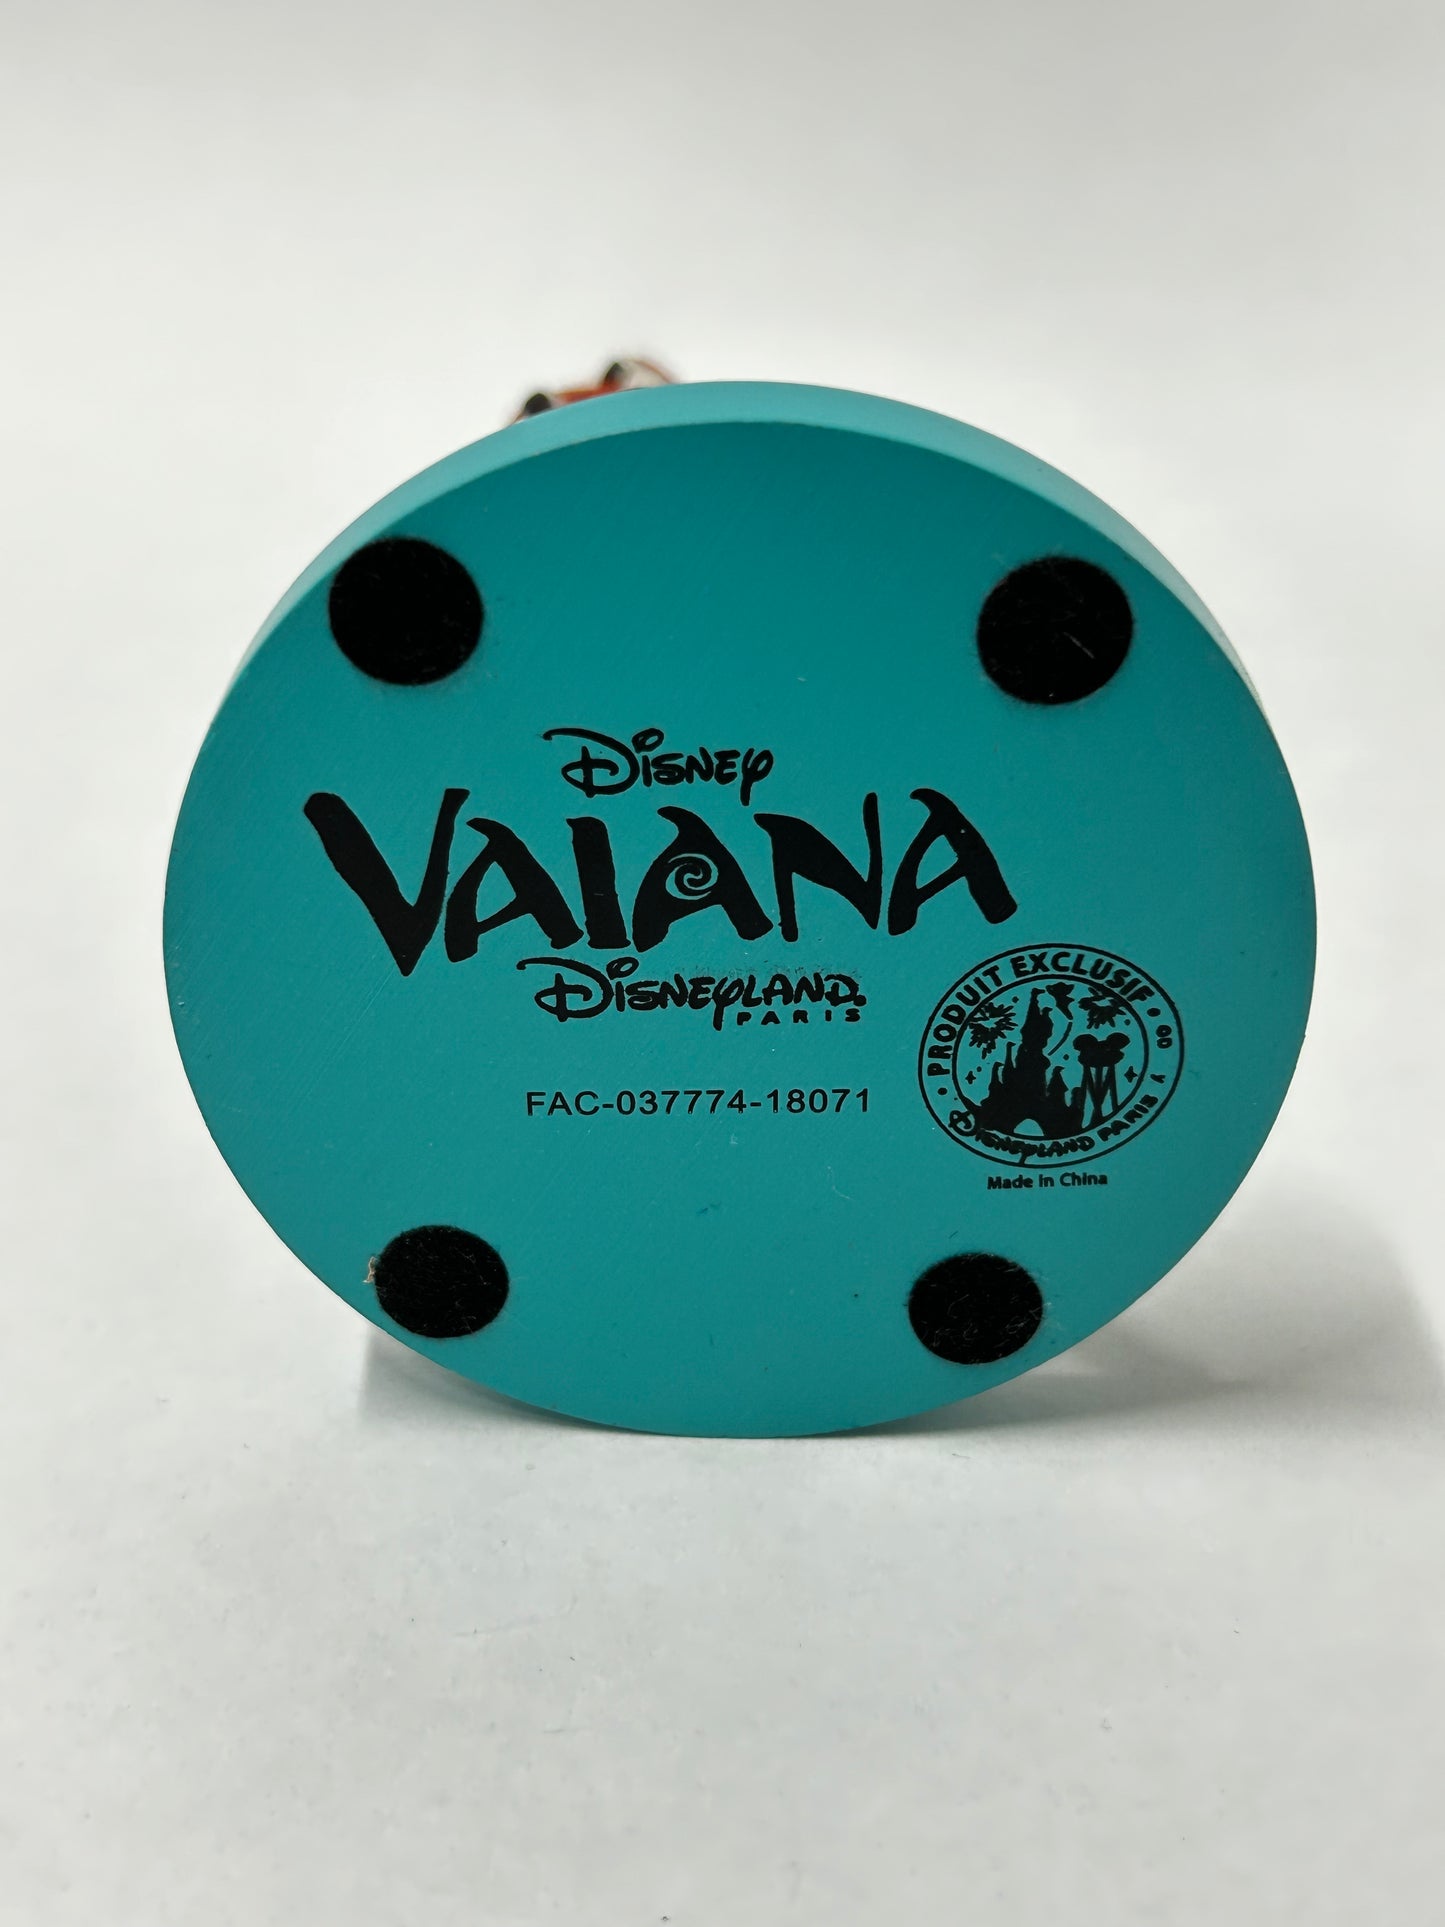 Disney Moana 'Moana' figurine